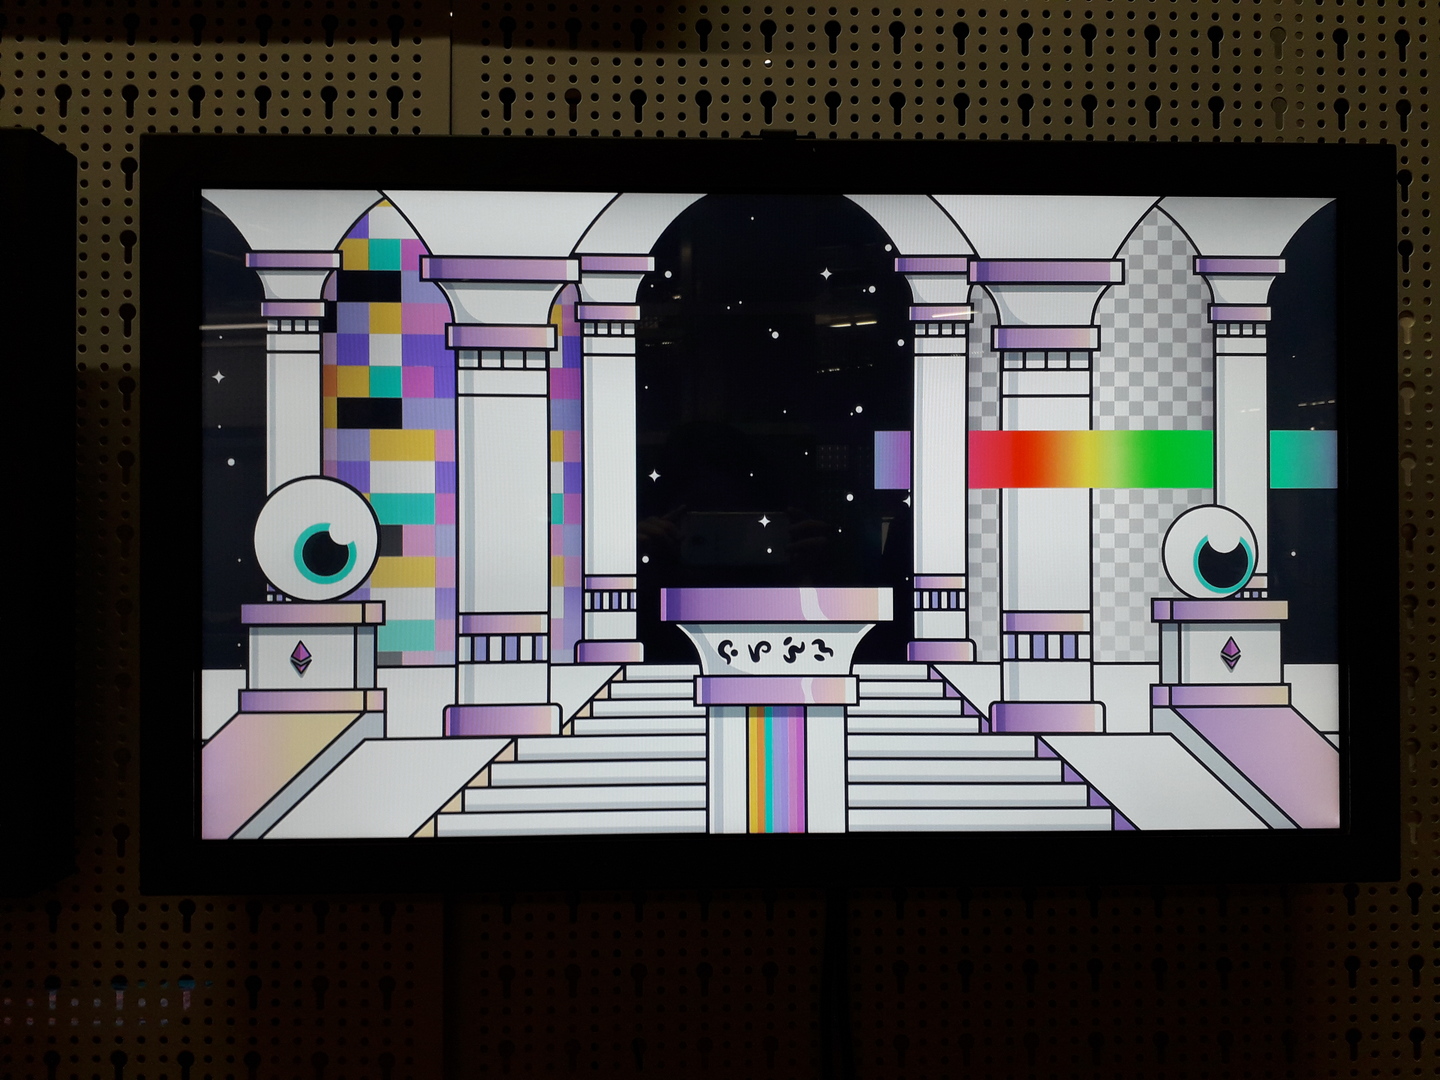 Image 1 : Photographie d'un visuel affiché sur un écran représentant des yeux sur des socles dans un espèce de temple spatial